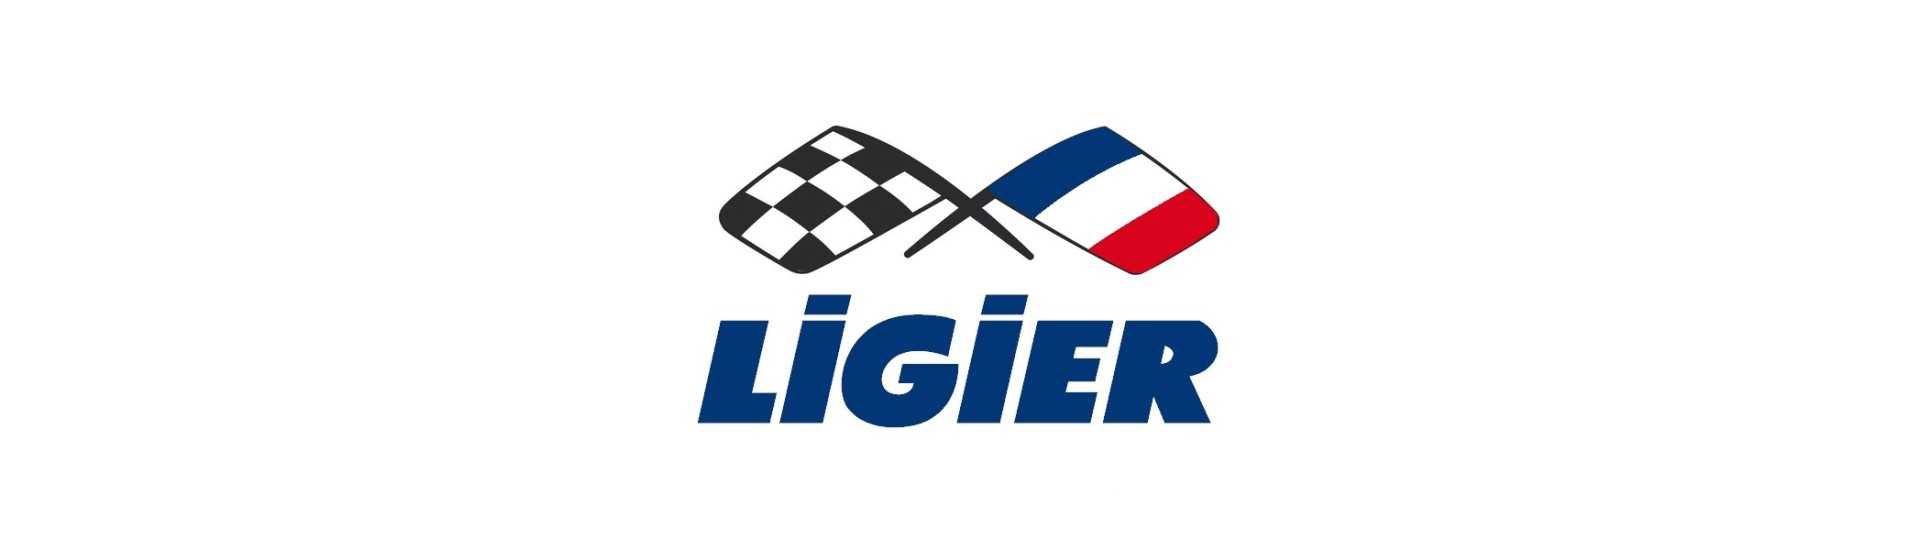 3. pysäytä tulipalo auton hinnalla ilman lupaa Ligier